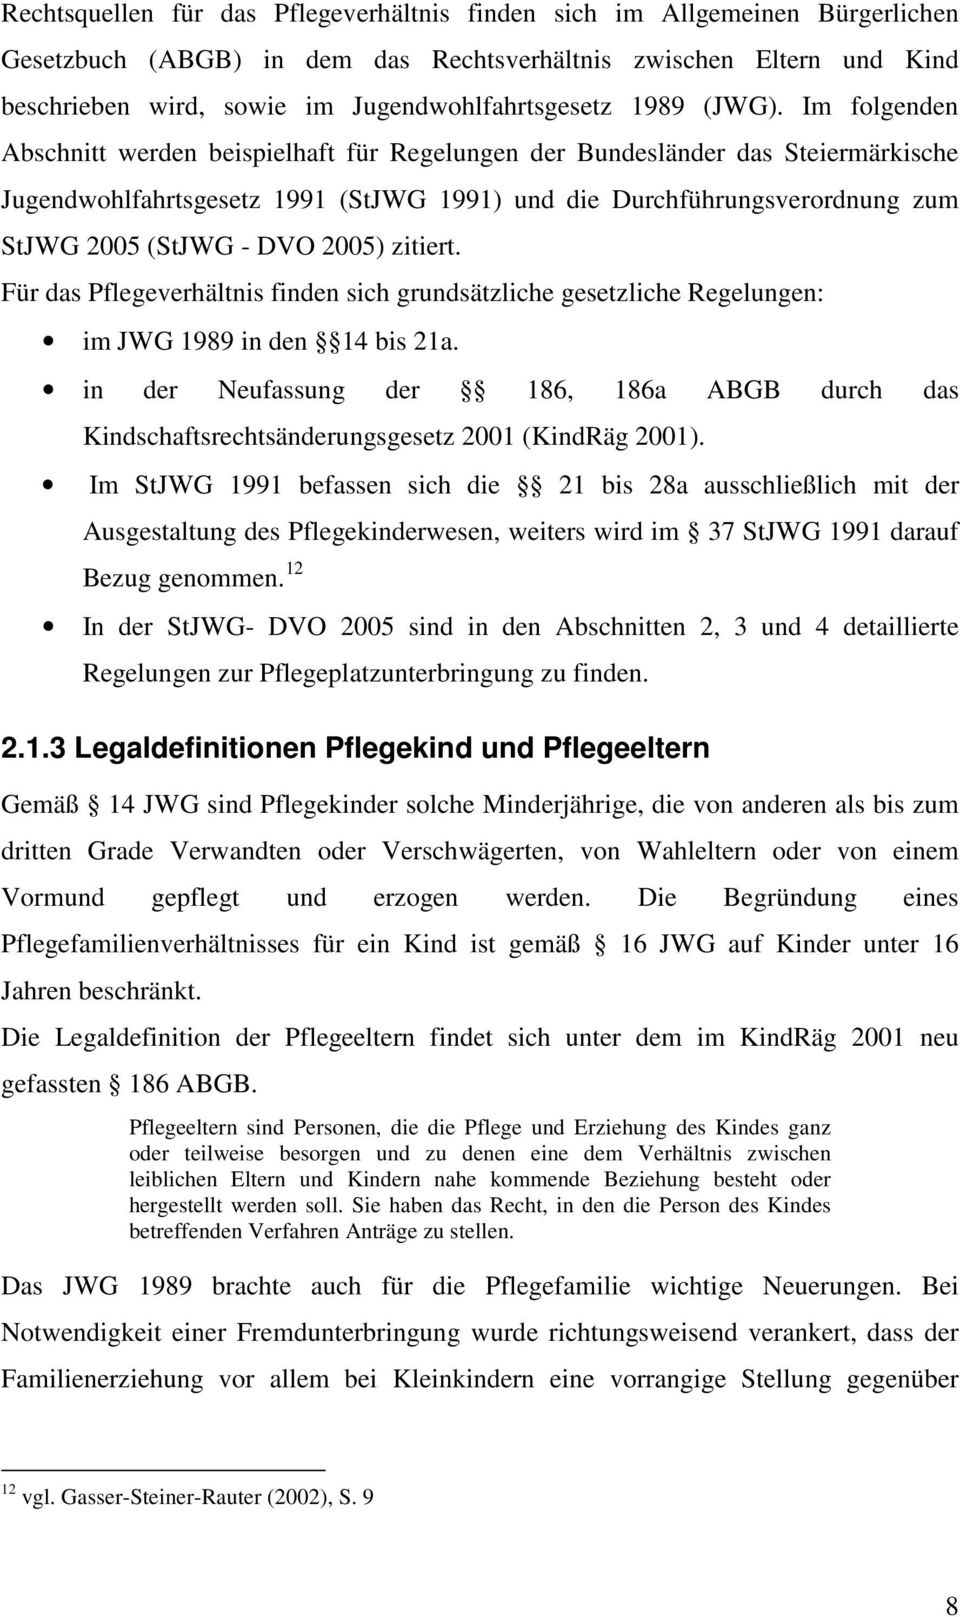 Im folgenden Abschnitt werden beispielhaft für Regelungen der Bundesländer das Steiermärkische Jugendwohlfahrtsgesetz 1991 (StJWG 1991) und die Durchführungsverordnung zum StJWG 2005 (StJWG - DVO